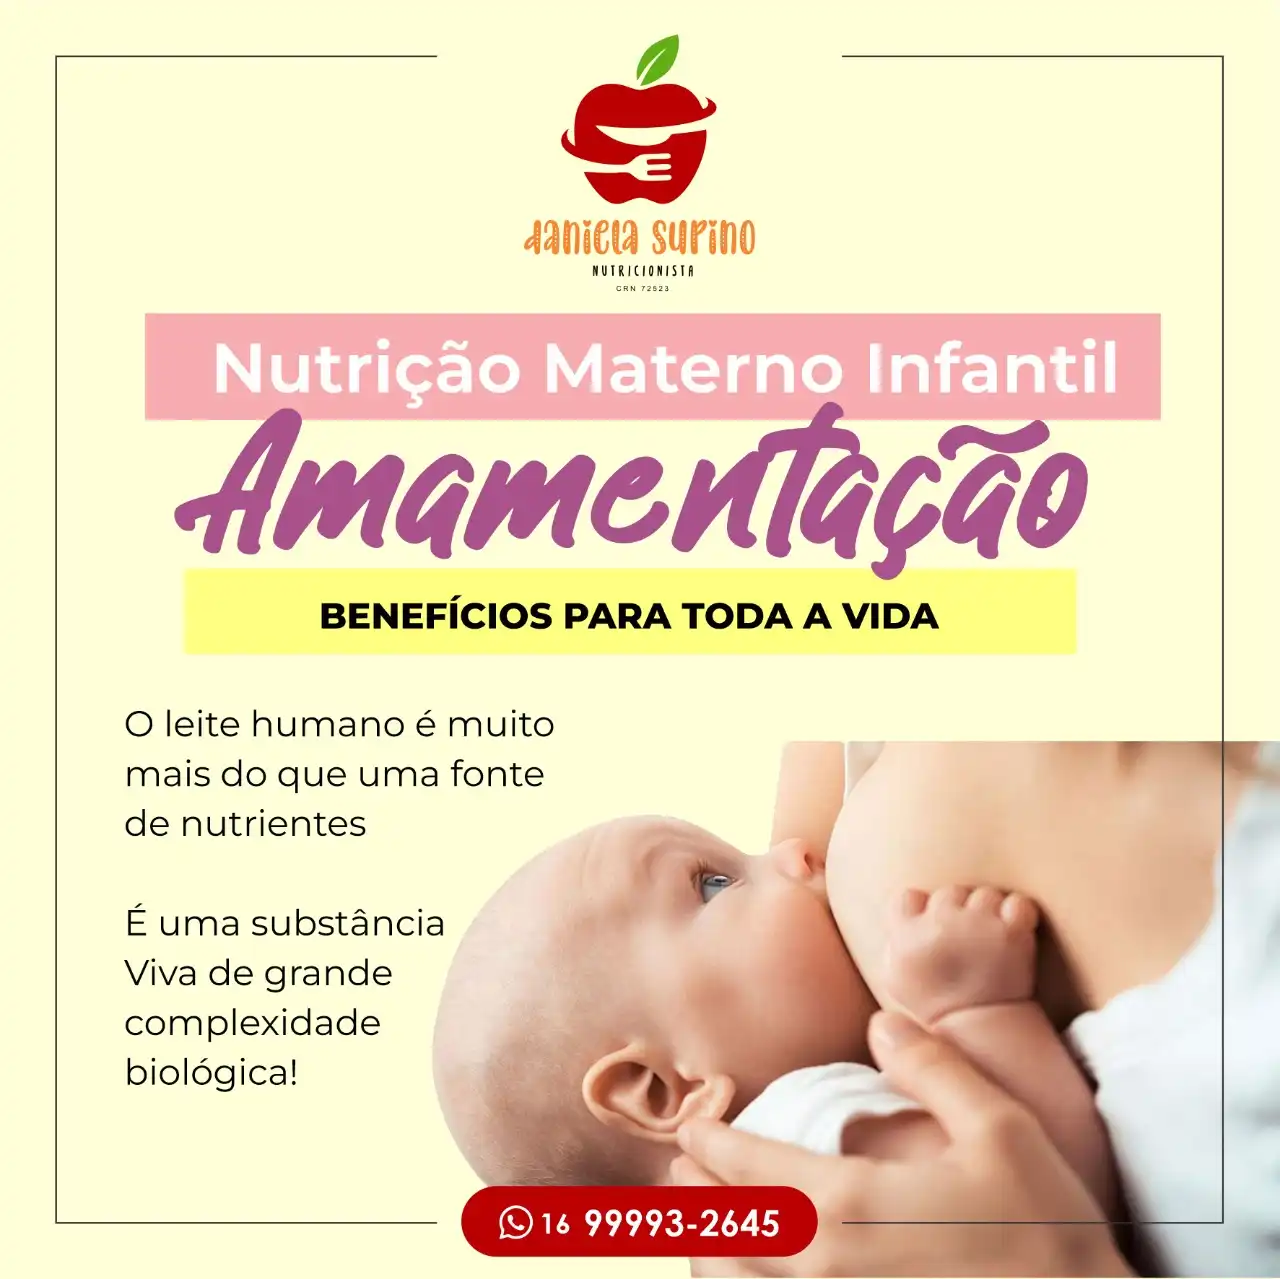 
Propaganda Post Nutrição Materno Infantil na Amamentação



